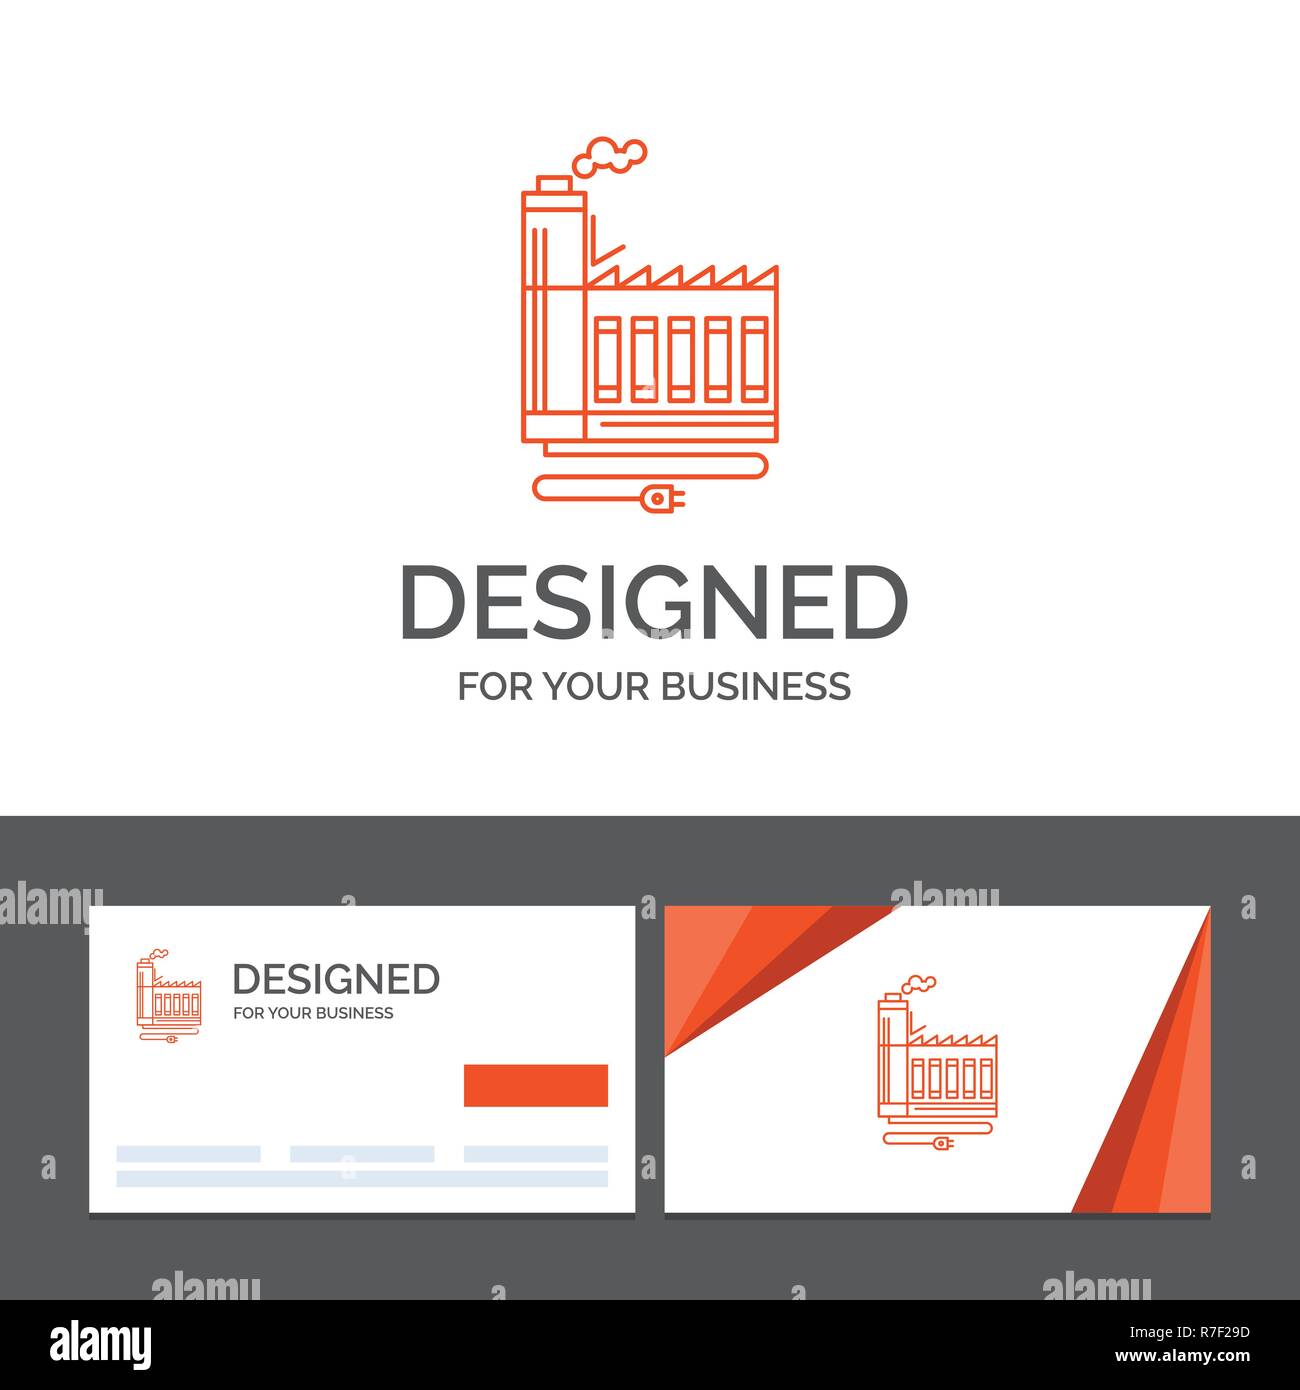 Business Logo Vorlage für Verbrauch, Ressourcen, Energie, Fabrik, Herstellung. Orange Visitenkarten mit Logo Vorlage Stock Vektor